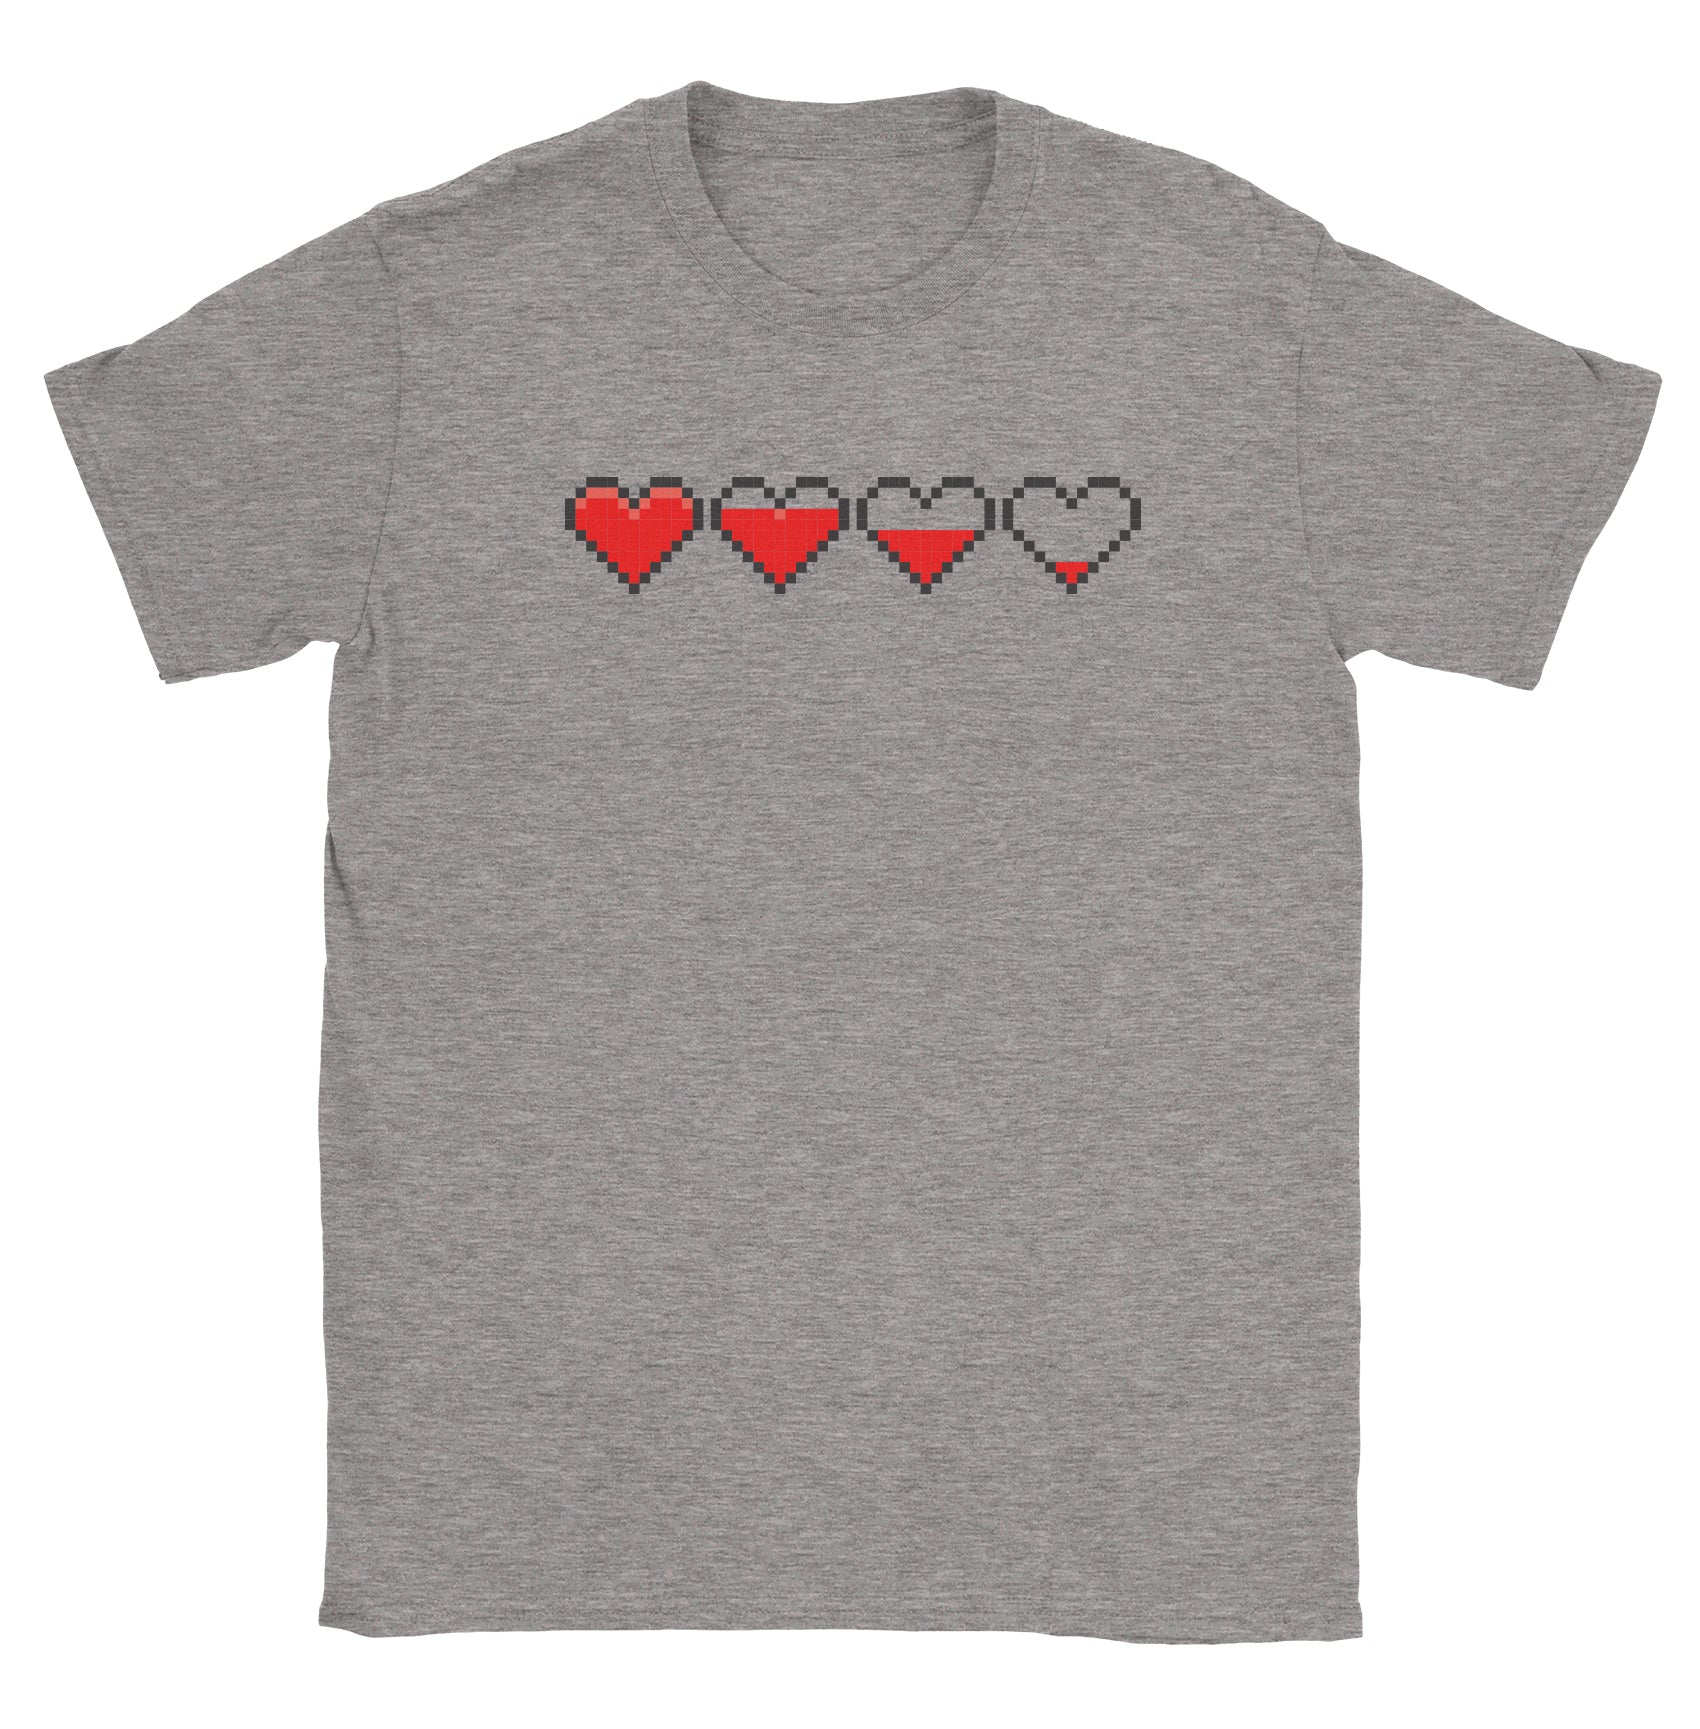 12-Bit Hearts - Black Cat MFG - T-Shirt